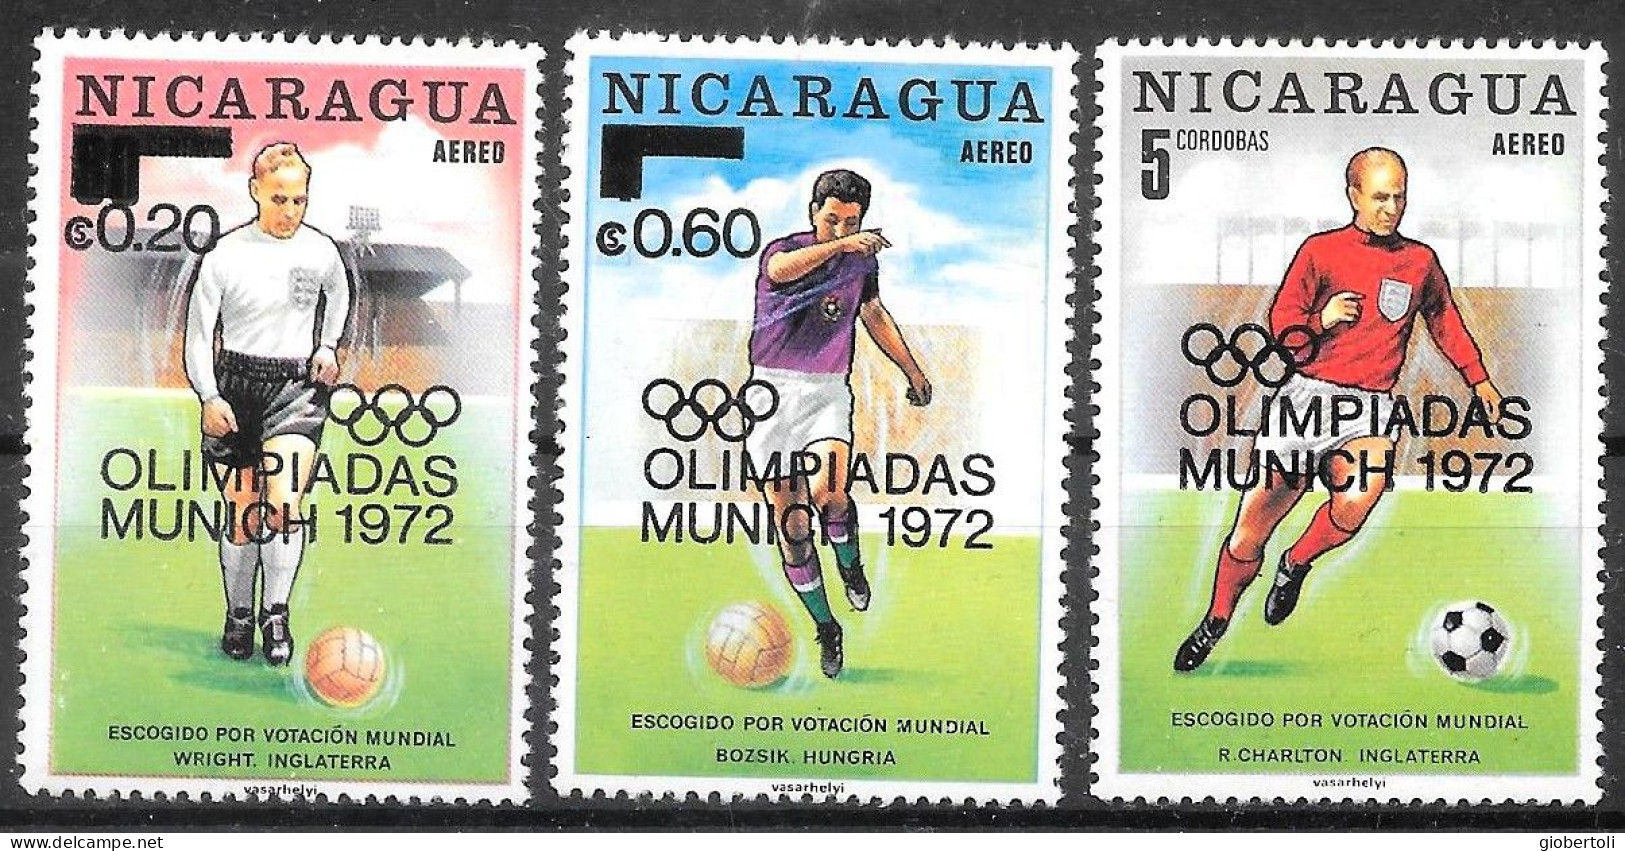 Nicaragua: Gioco Del Calcio, Football Game, Le Jeu Du Calcio - Summer 1972: Munich